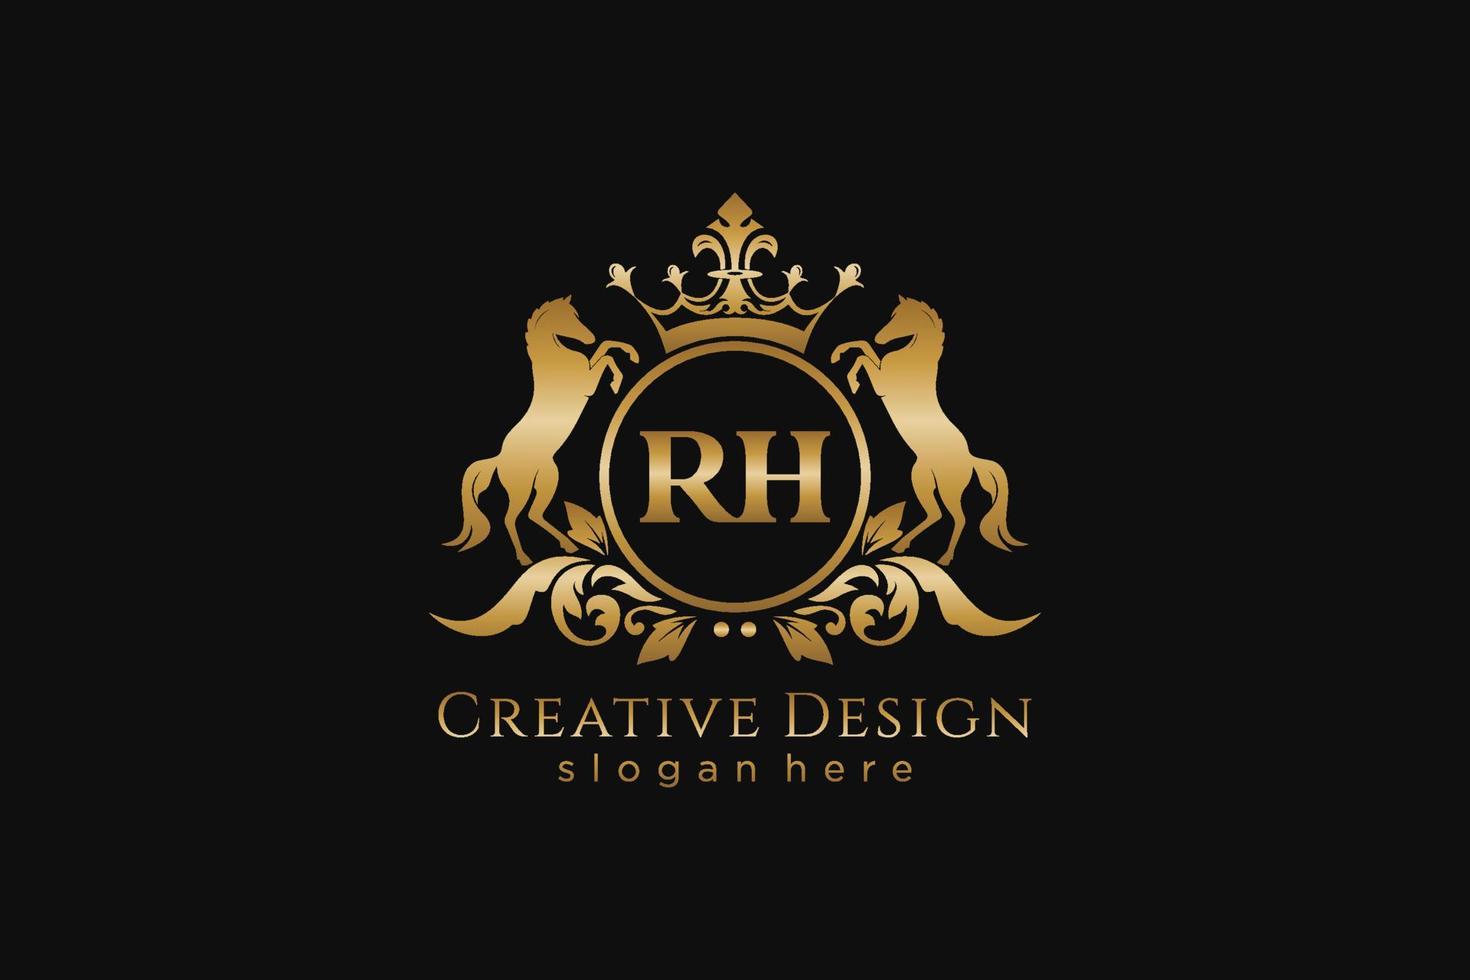 crista dourada retrô inicial rh com círculo e dois cavalos, modelo de crachá com pergaminhos e coroa real - perfeito para projetos de marca luxuosos vetor